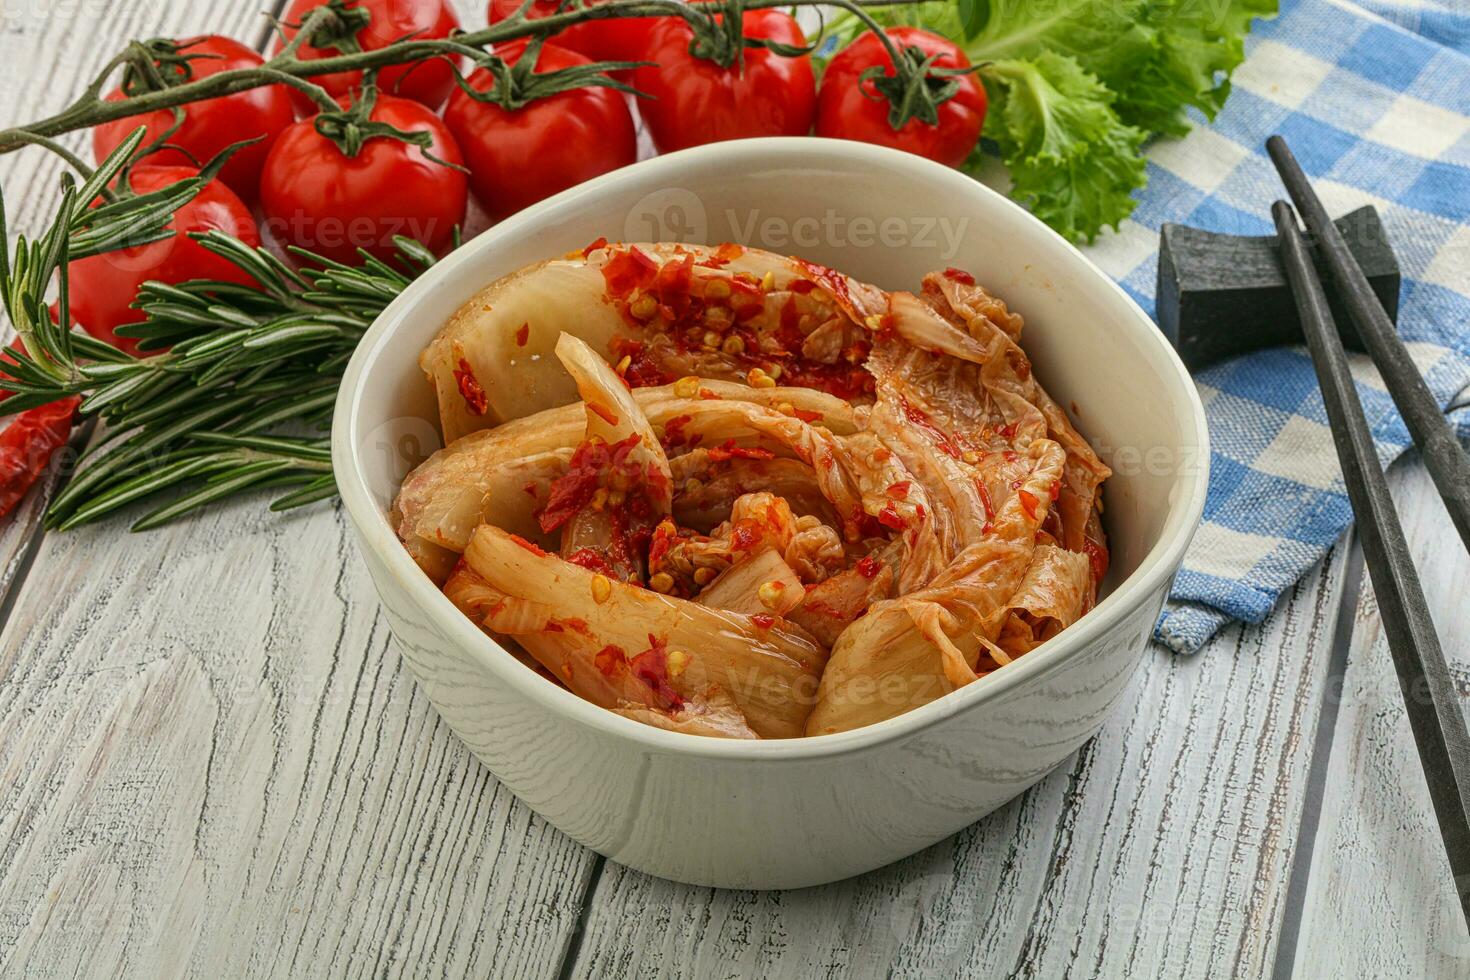 koreansk mat - kryddig kimchikål foto